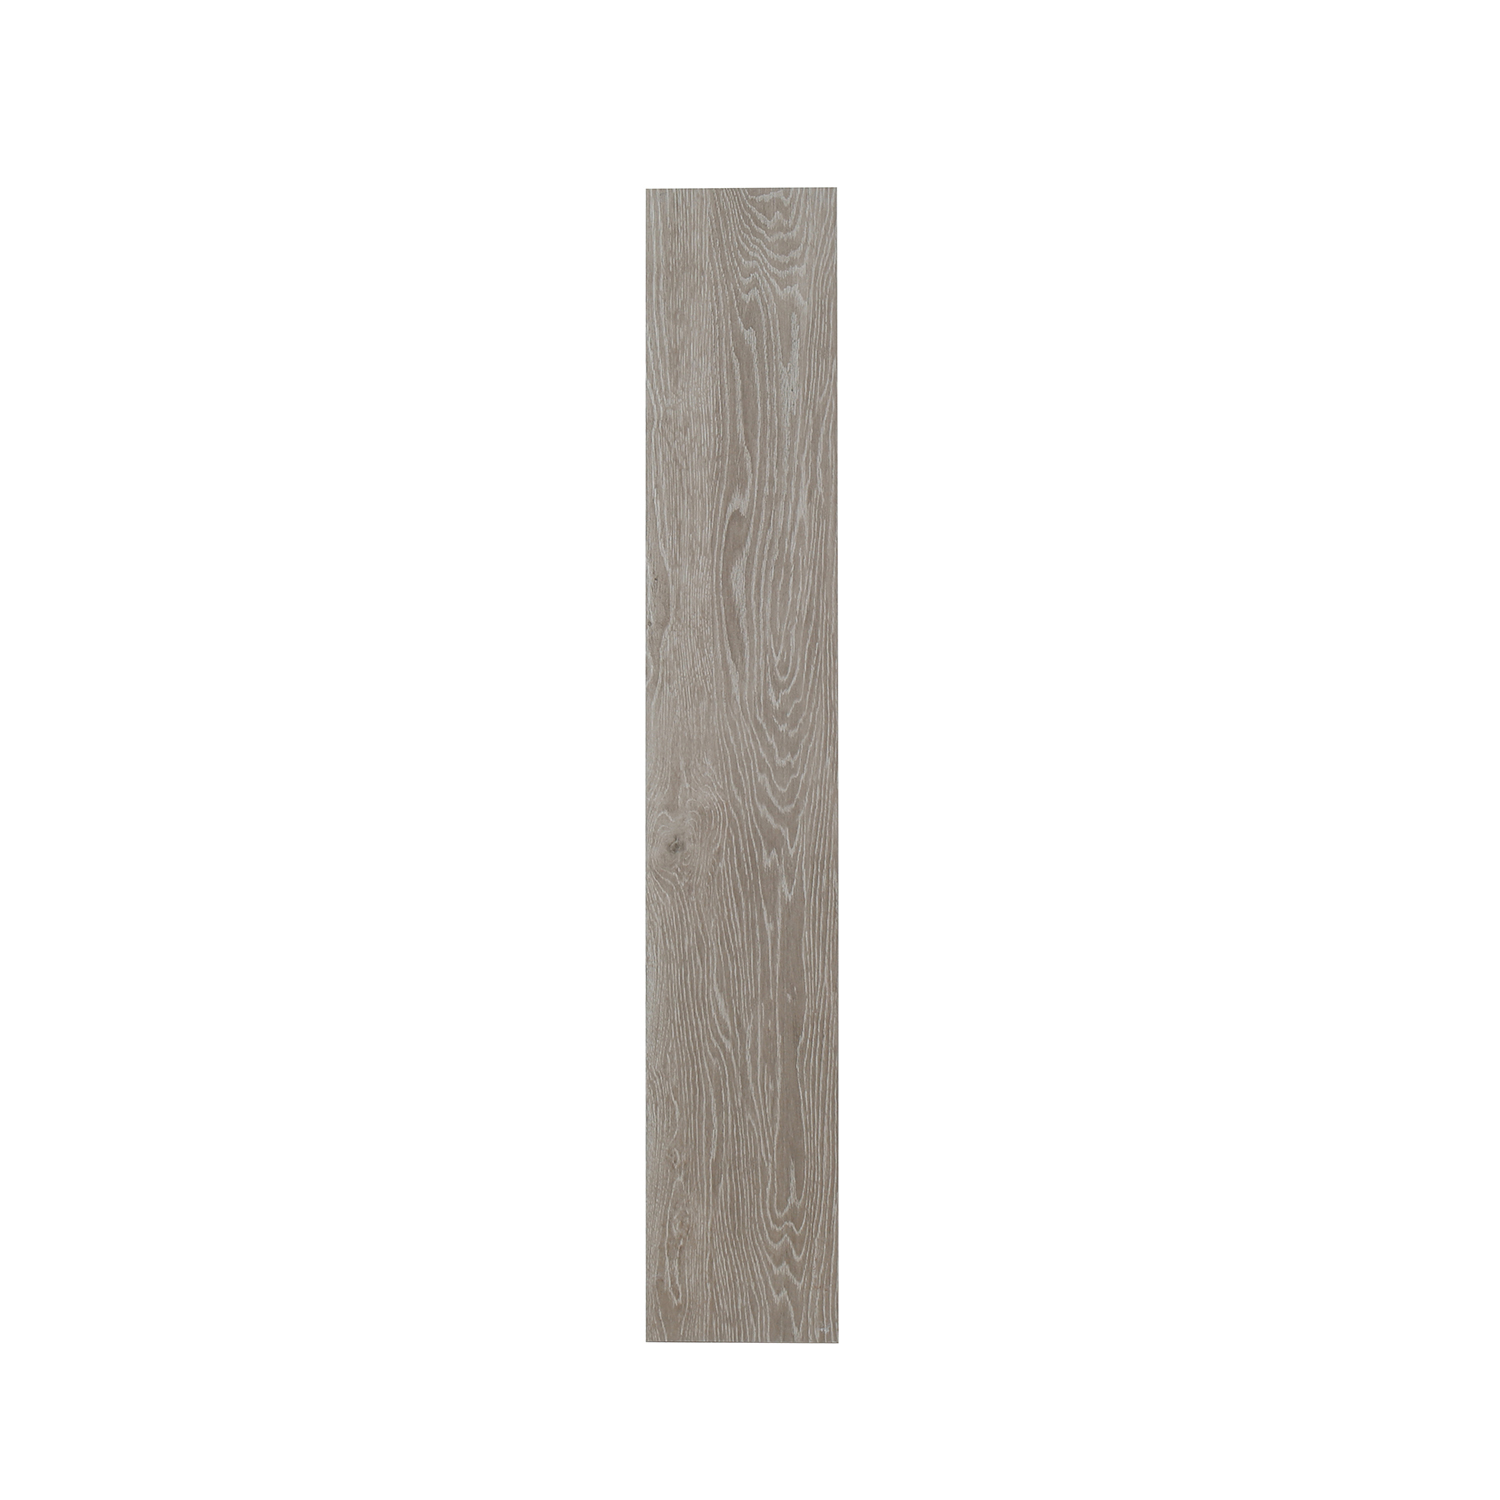 3D Inkjet Like Natural wood looks wooden floor tiles-AJ915056M-150x900